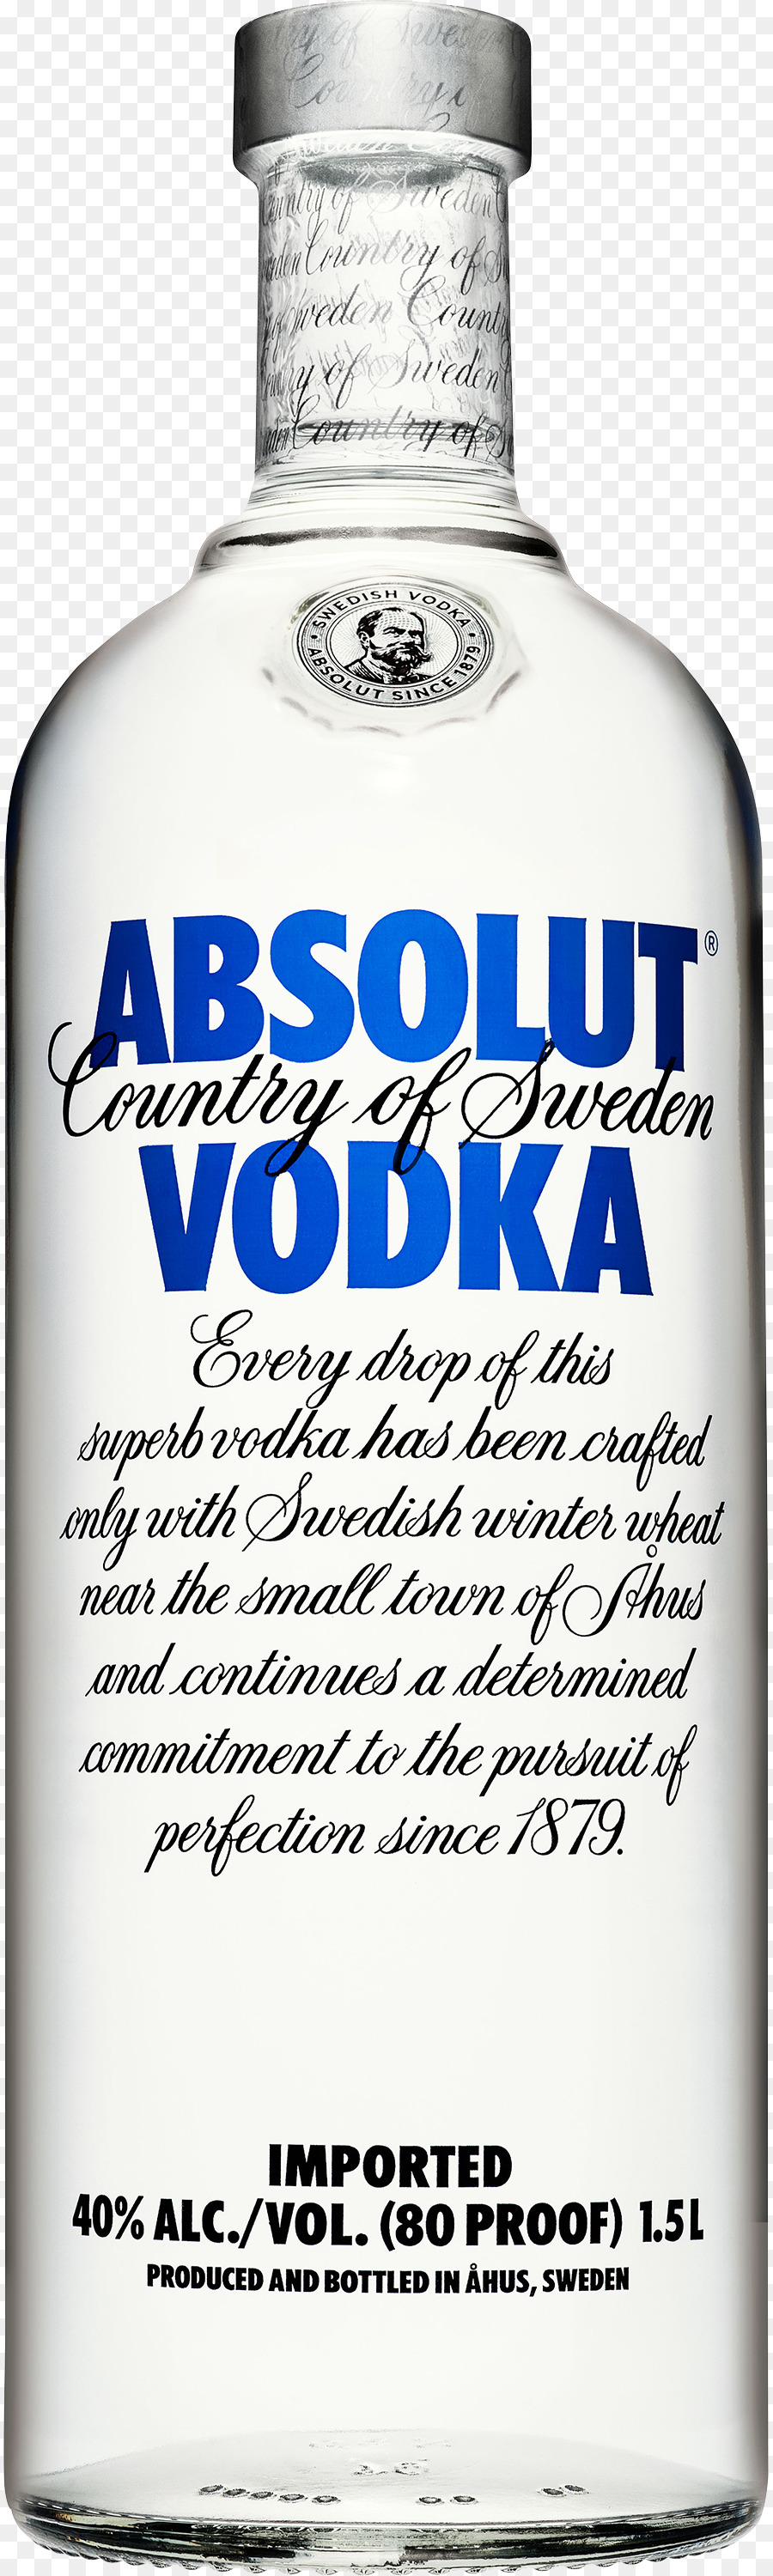 Absolut Vodka chai Thủy tinh Smirnoff - rượu vodka